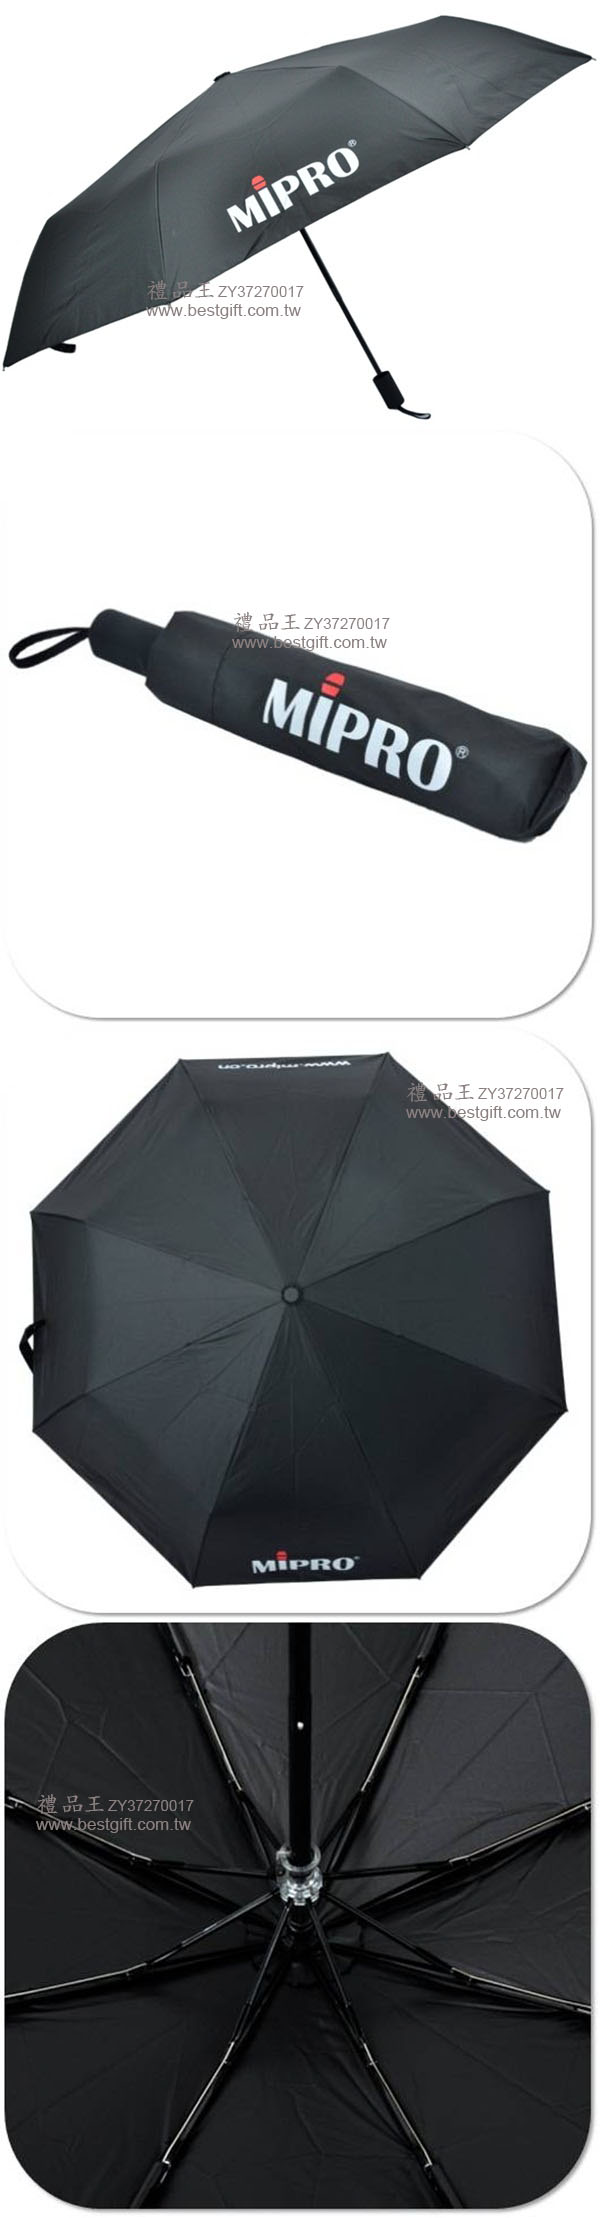 超輕防曬折疊傘  商品貨號: ZY37270017